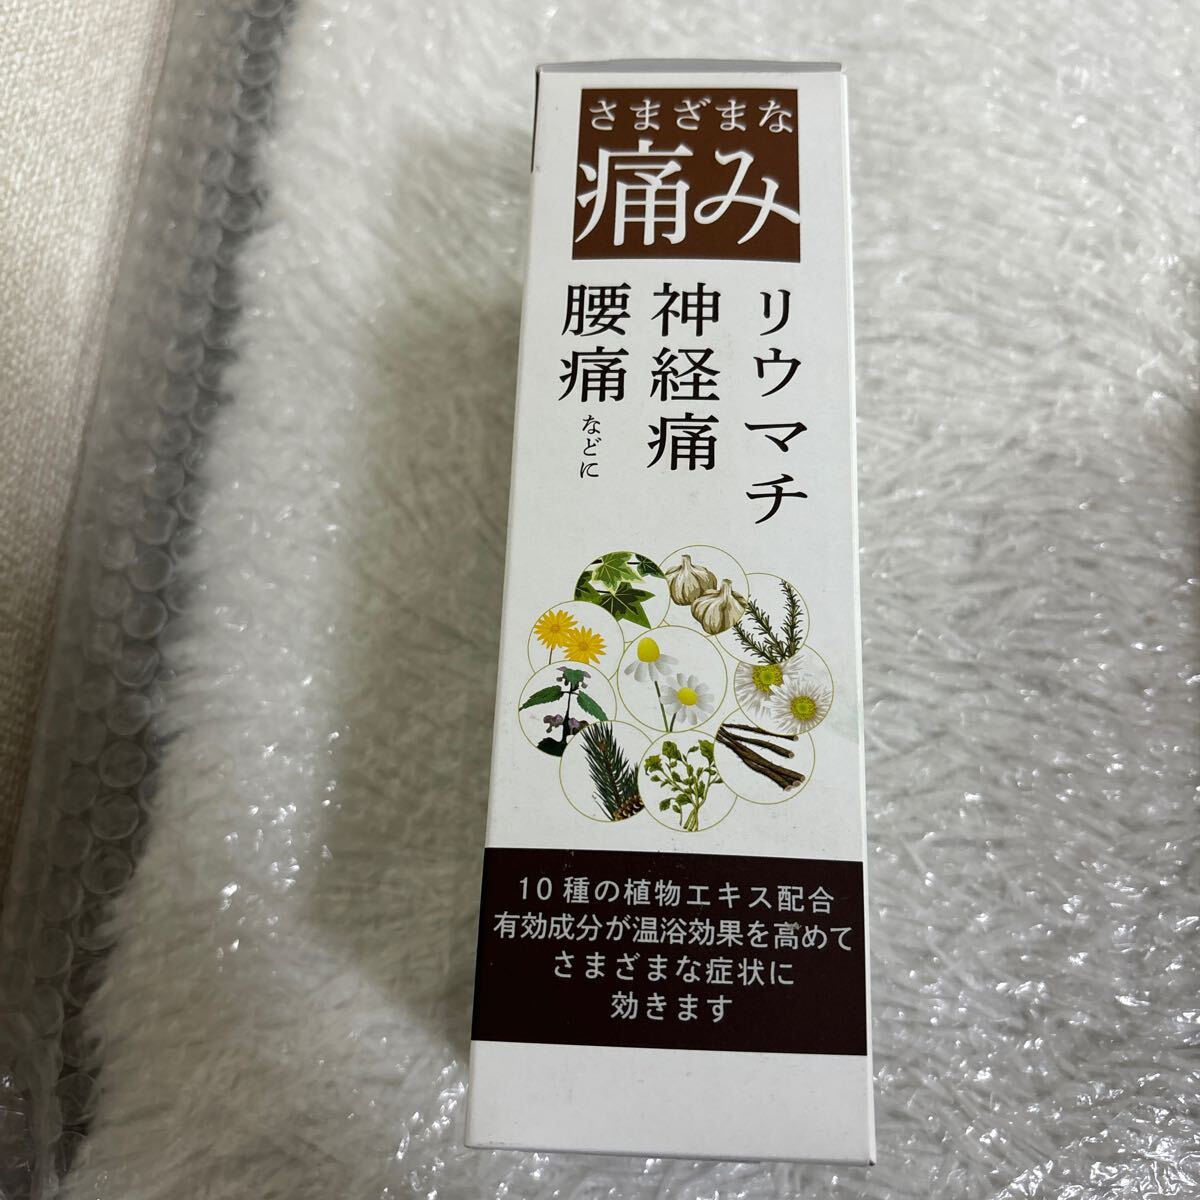 [059-023]... Toyama .. medicine medicine for bathwater additive 400mL